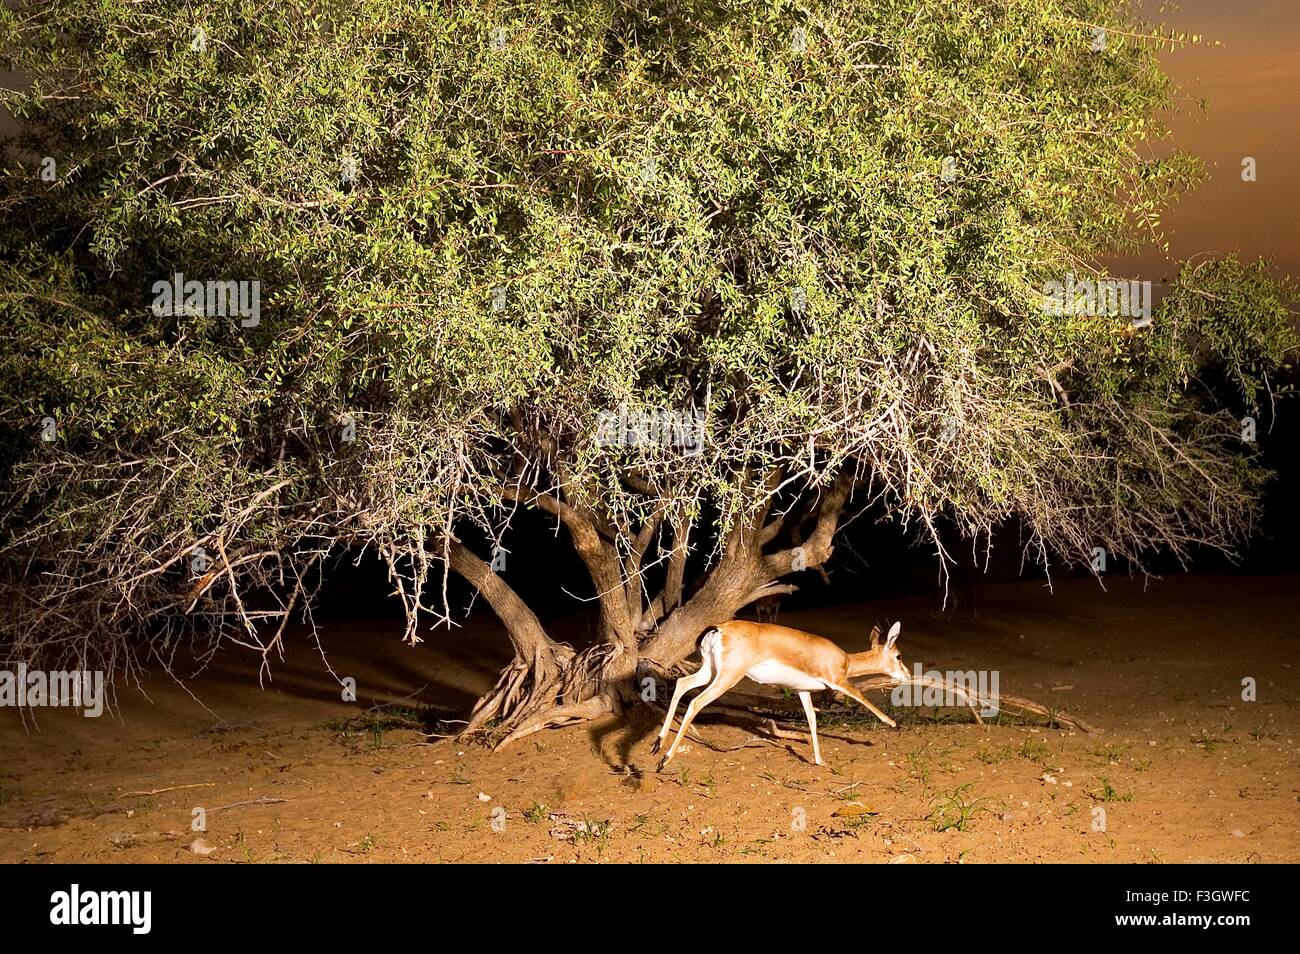 Indian gazelle or chinkara deer taken care by bishnoi community of village Jajiwal near Jodhpur Rajasthan India Stock Photo